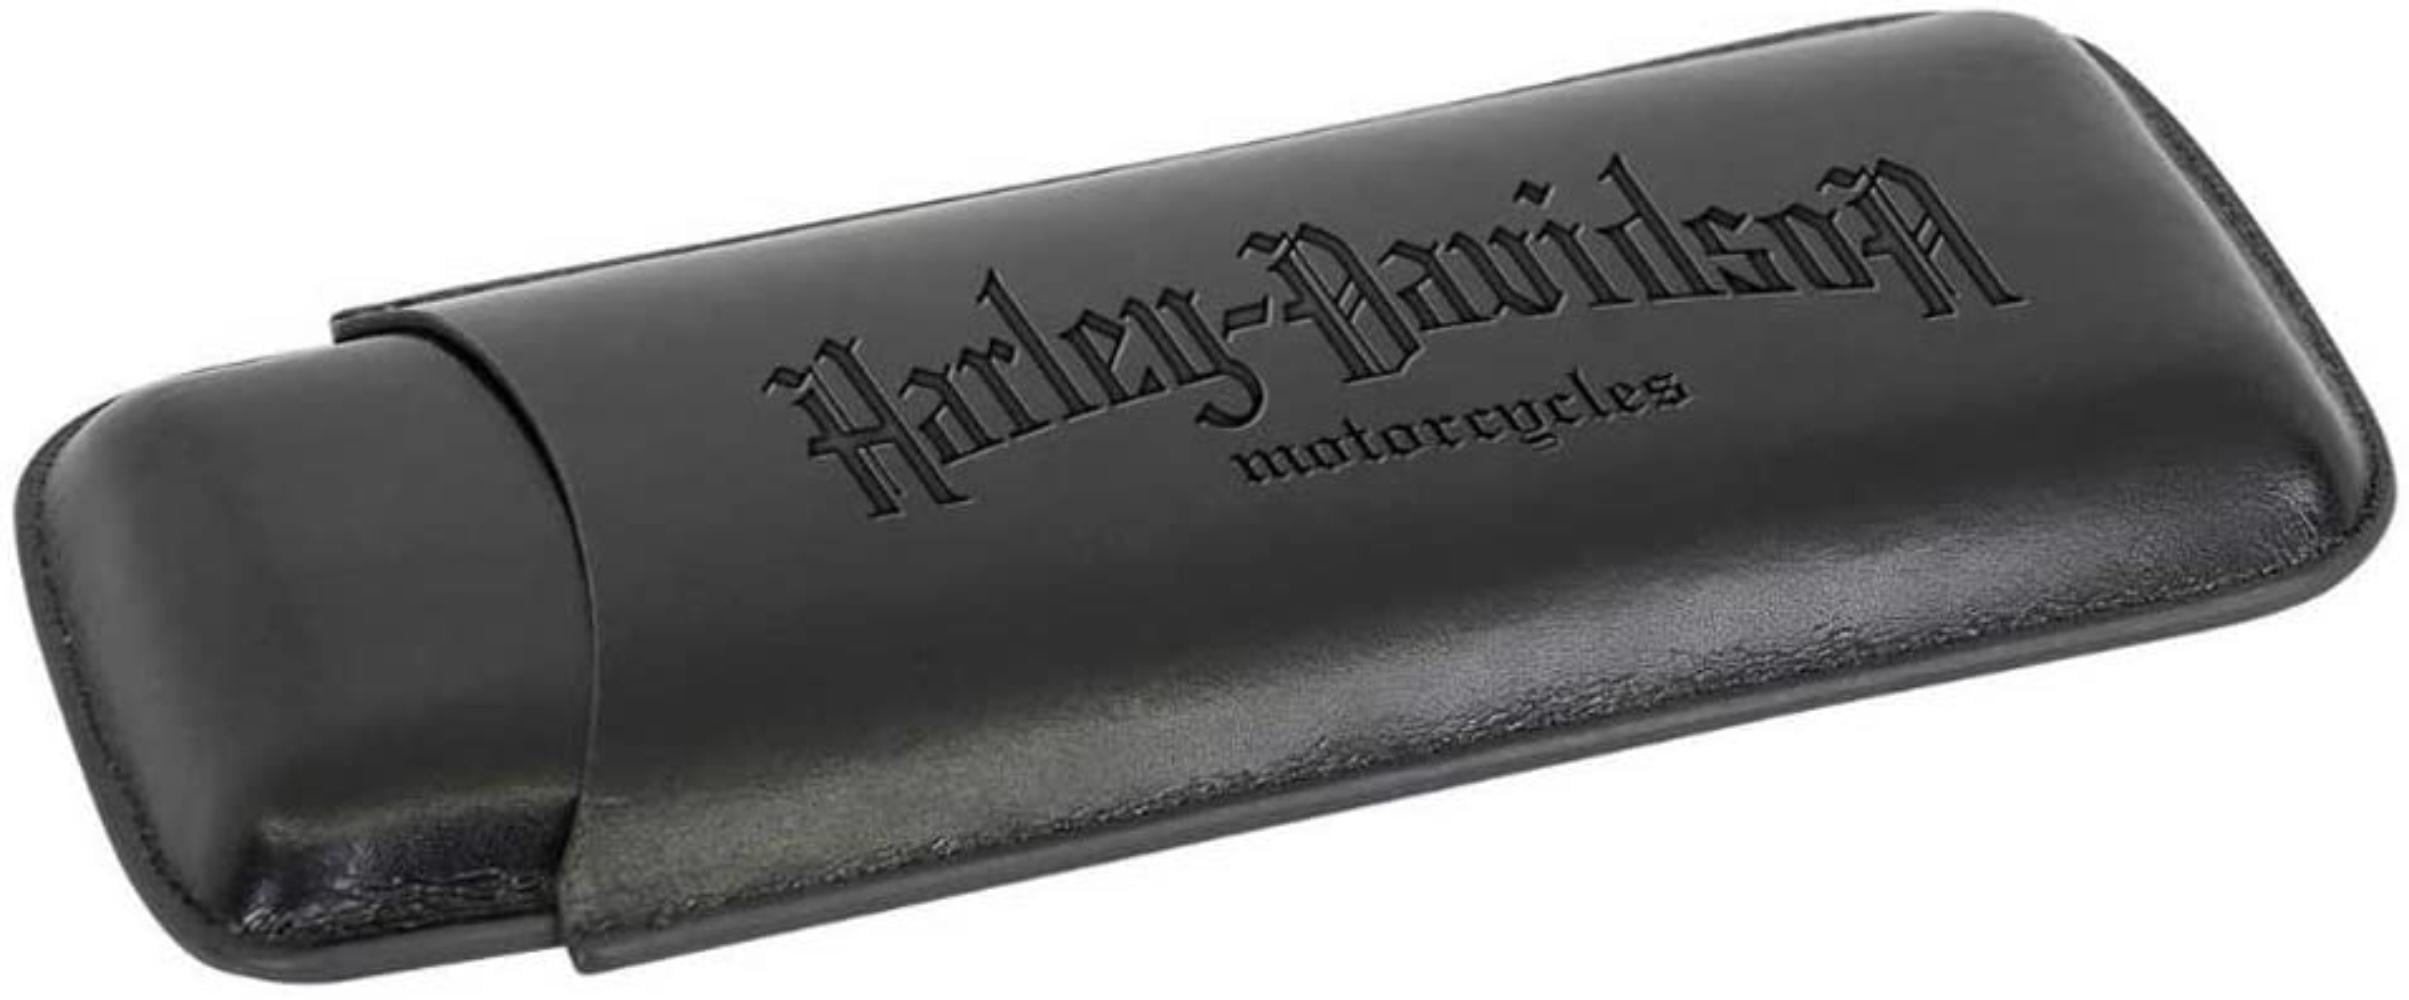 SHIPS FAST Cigar Case & Cutter HDL-18550 Harley-Davidson